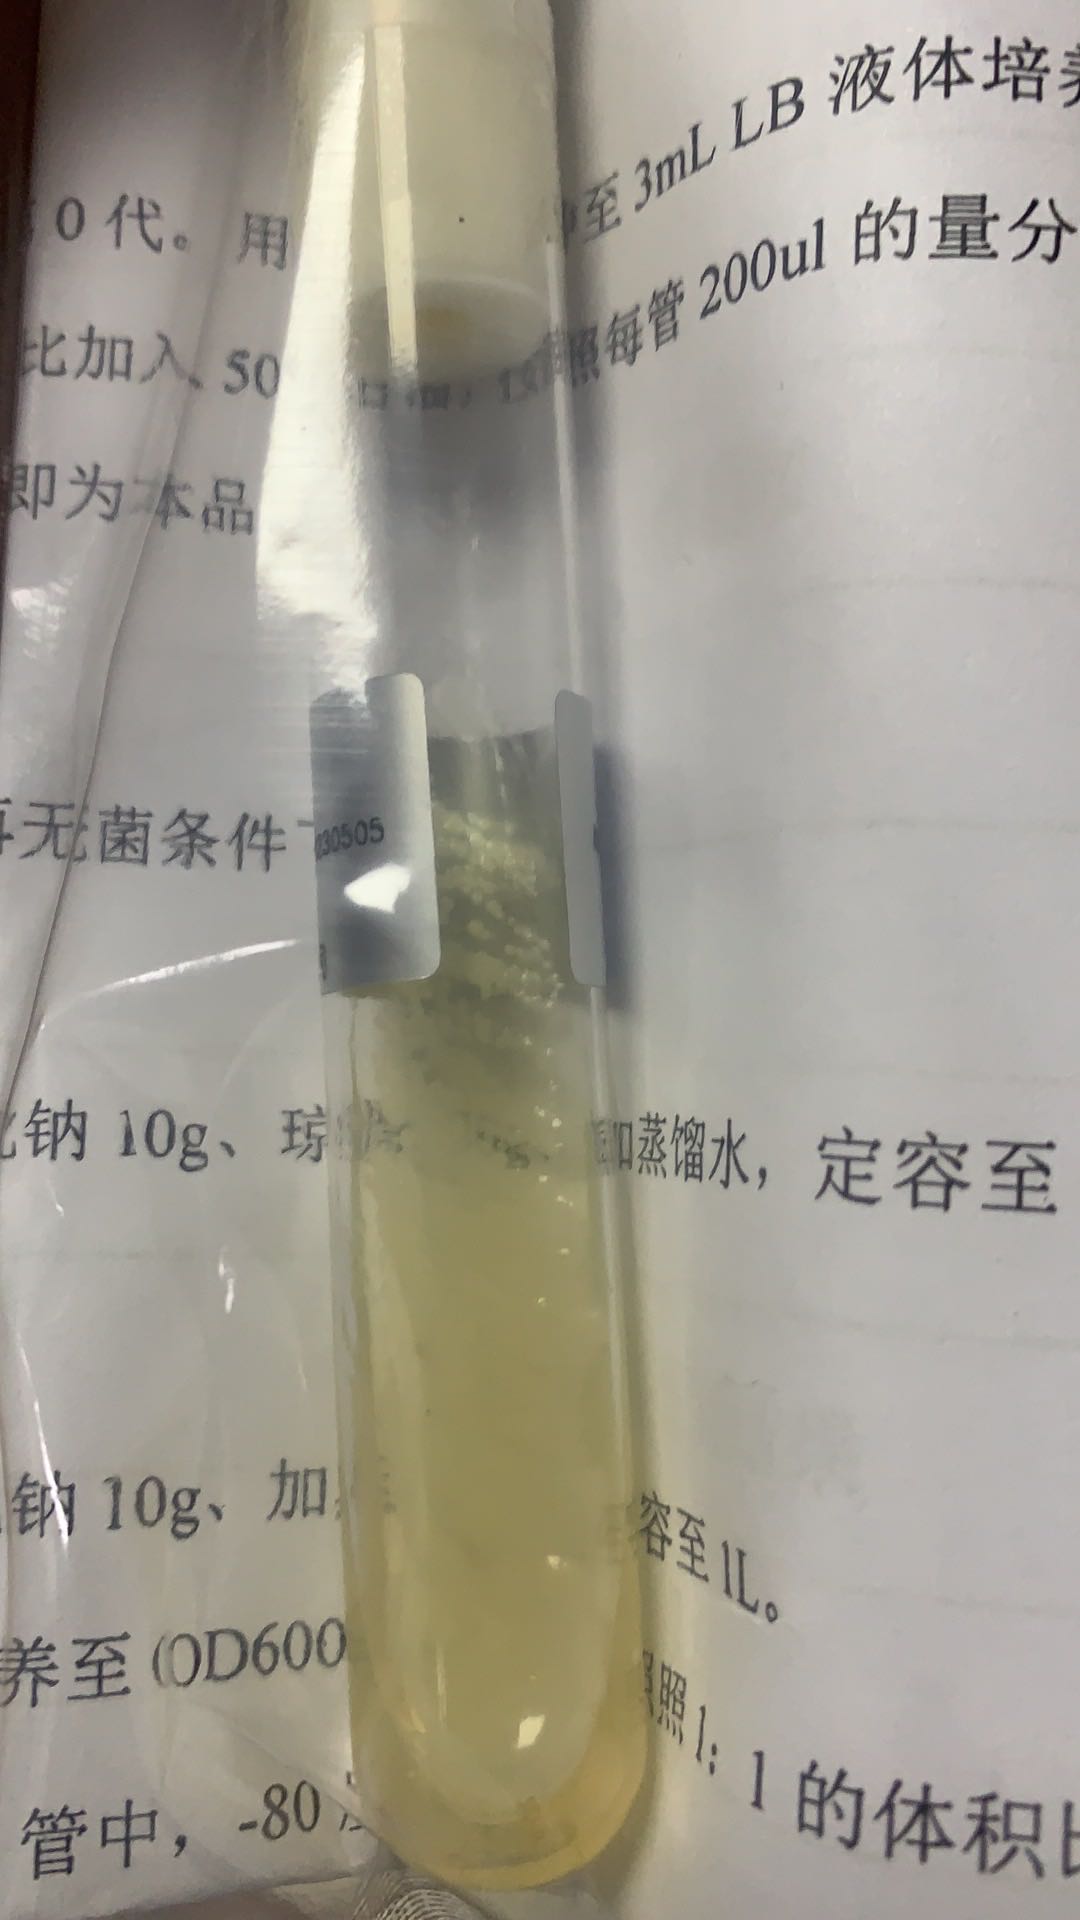 菌液金黄色葡萄球菌ATCC_提供金黄色葡萄球菌价格_上海晅科生物科技有限公司